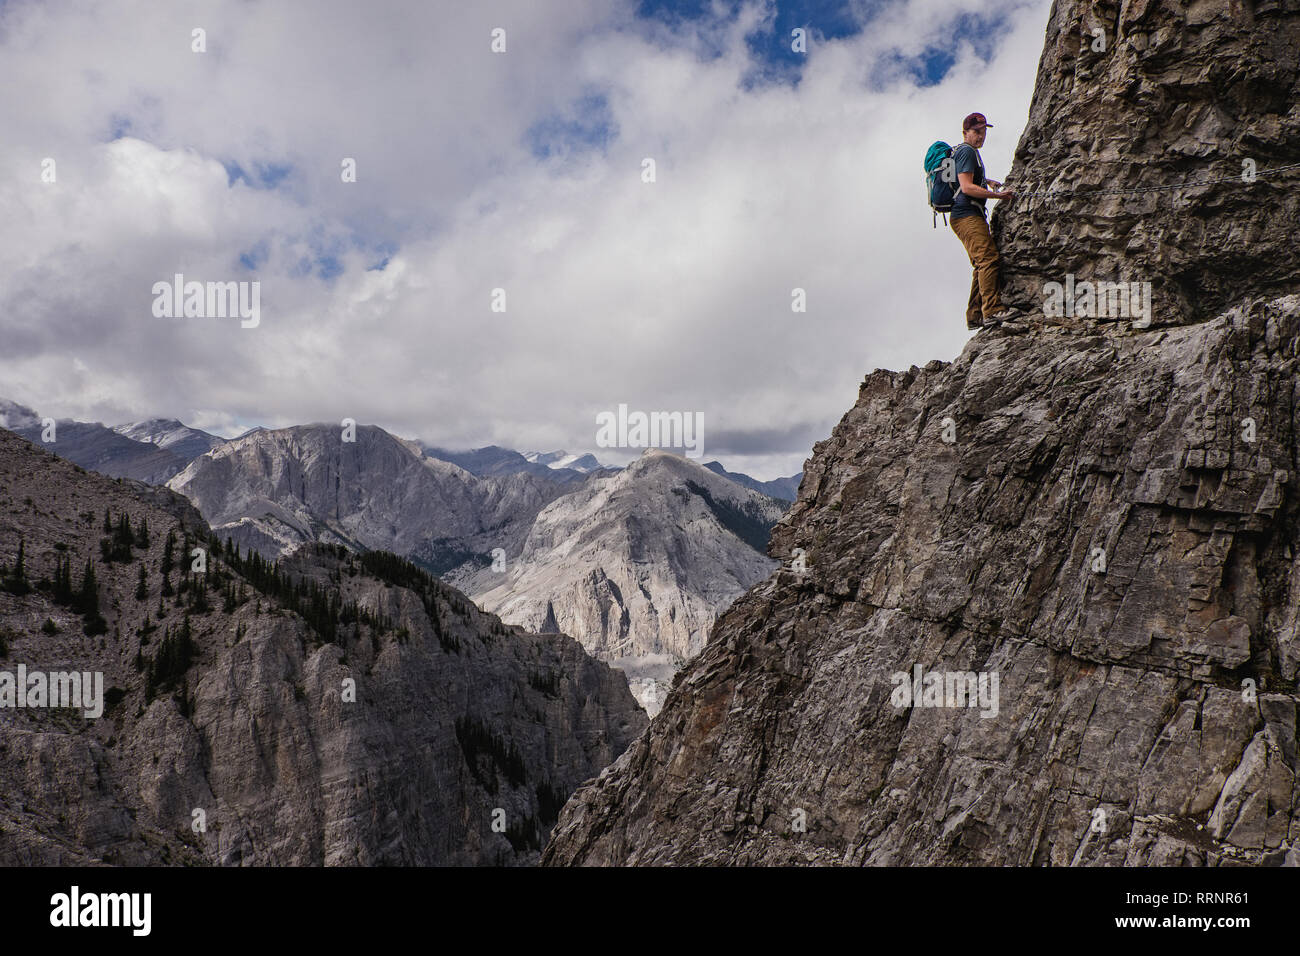 Man mountain climbing steep, craggy mountain face Stock Photo